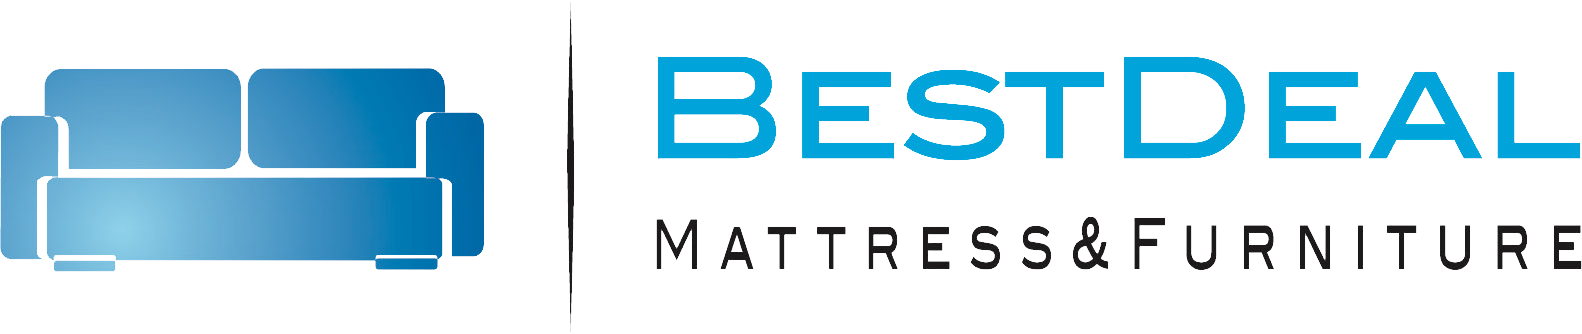 Best Deals Mattress & Furniture